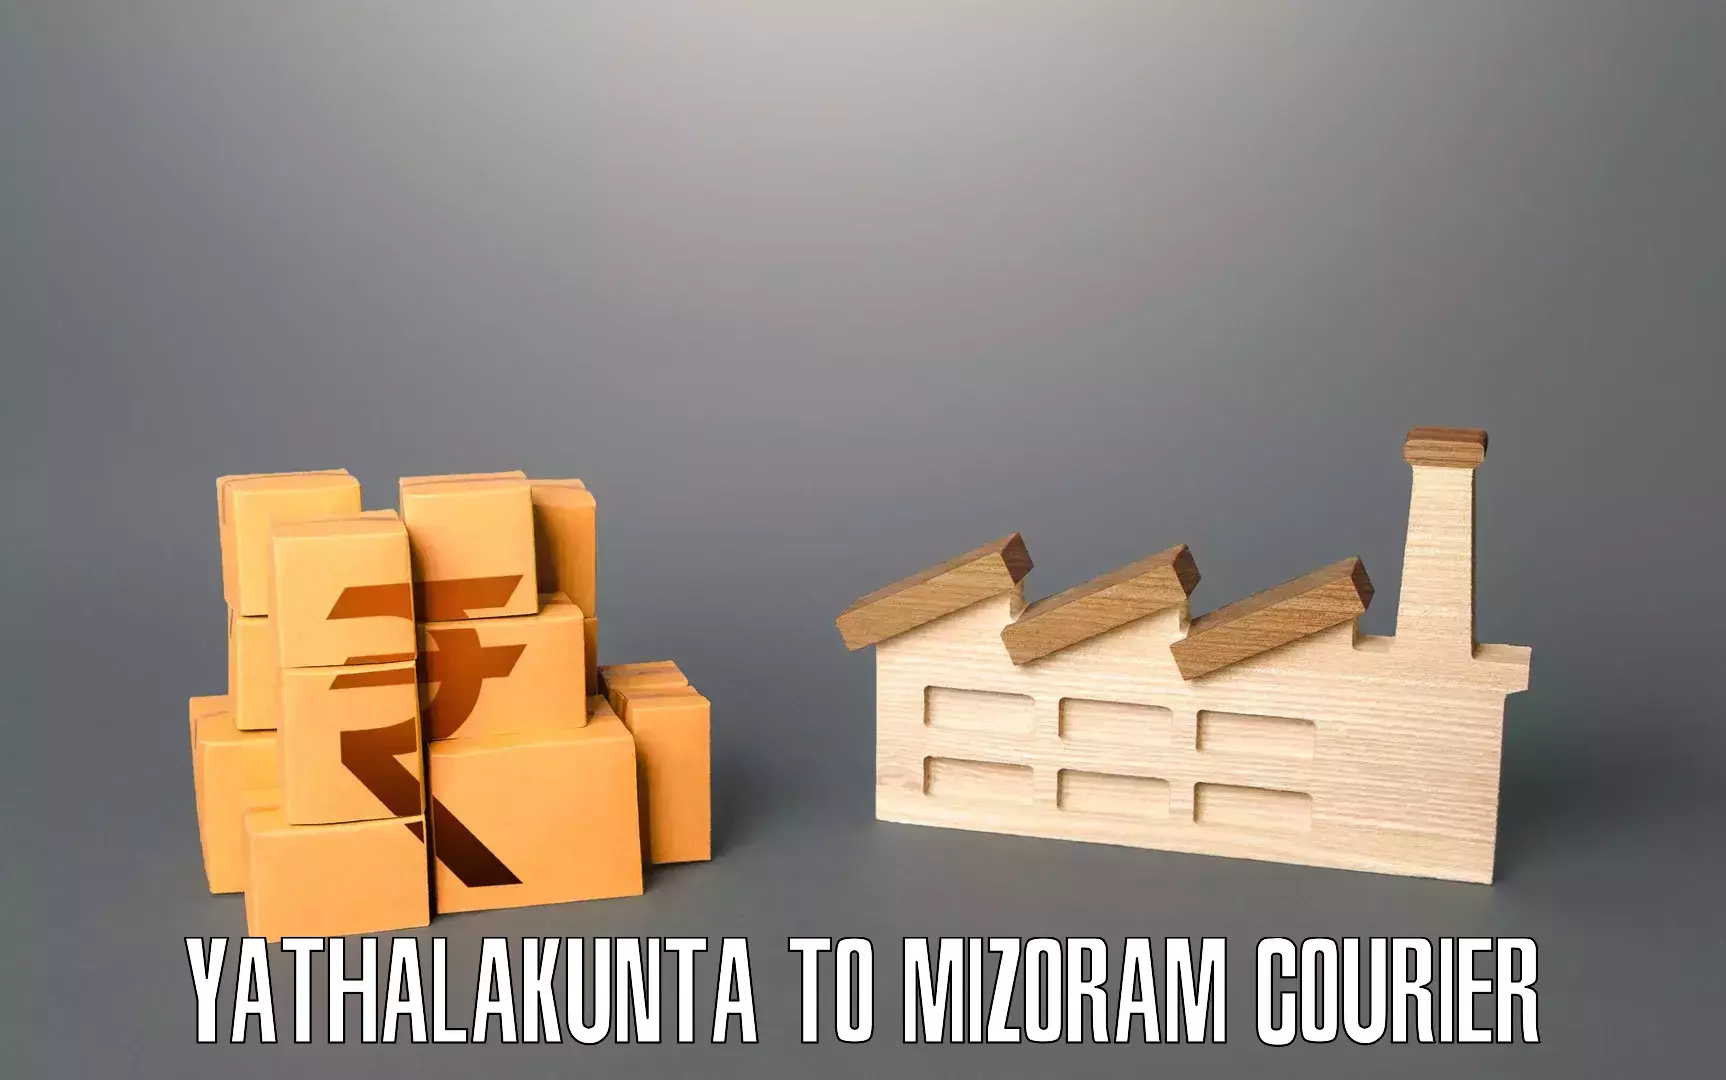 Expert moving and storage Yathalakunta to Mizoram